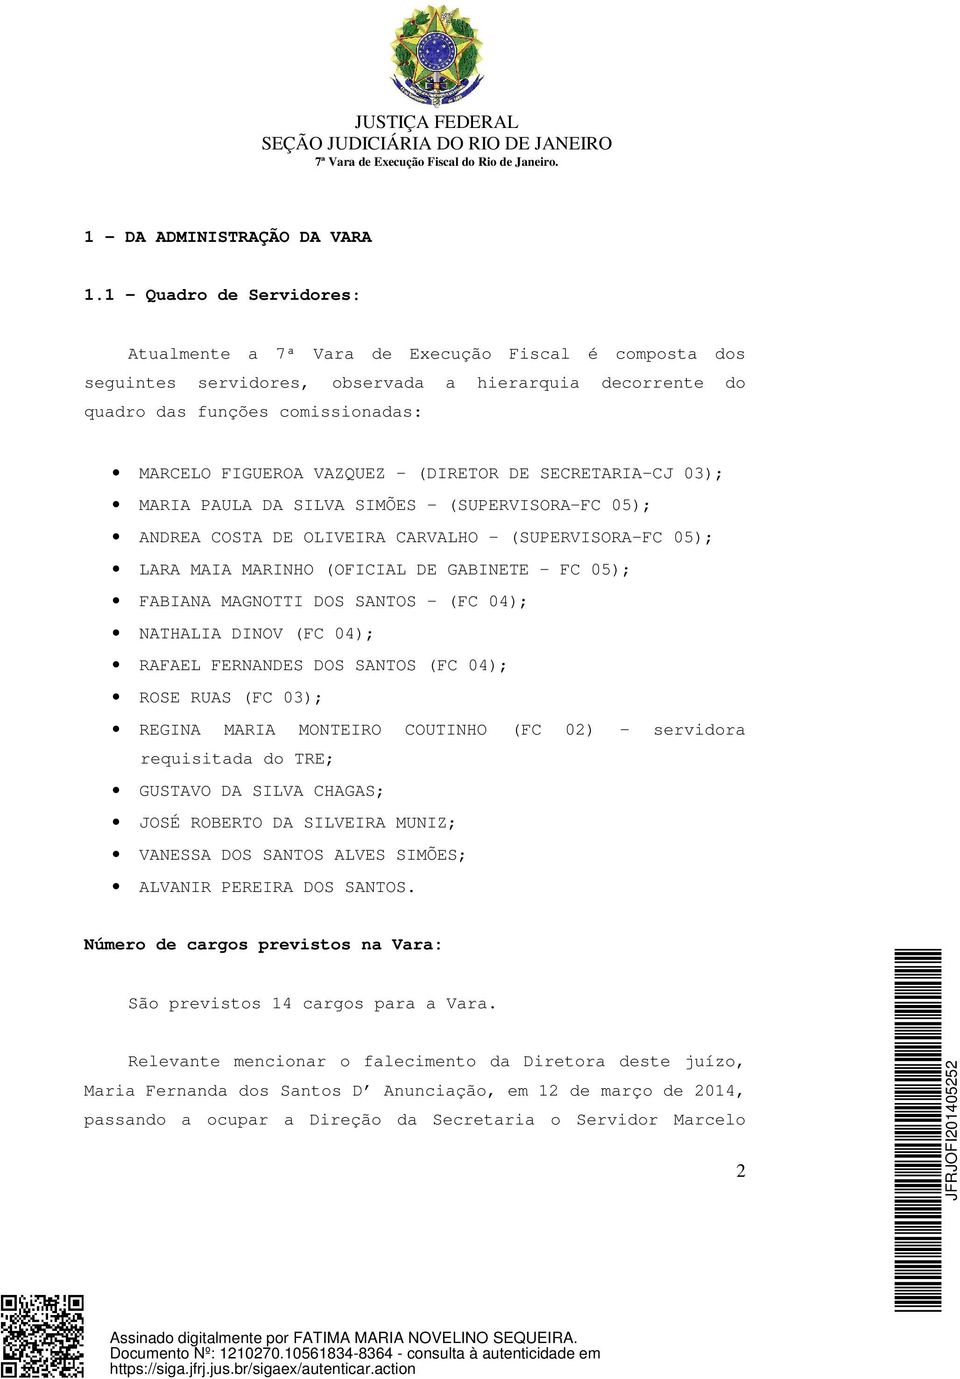 (DIRETOR DE SECRETARIA CJ 03); MARIA PAULA DA SILVA SIMÕES (SUPERVISORA FC 05); ANDREA COSTA DE OLIVEIRA CARVALHO (SUPERVISORA FC 05); LARA MAIA MARINHO (OFICIAL DE GABINETE FC 05); FABIANA MAGNOTTI